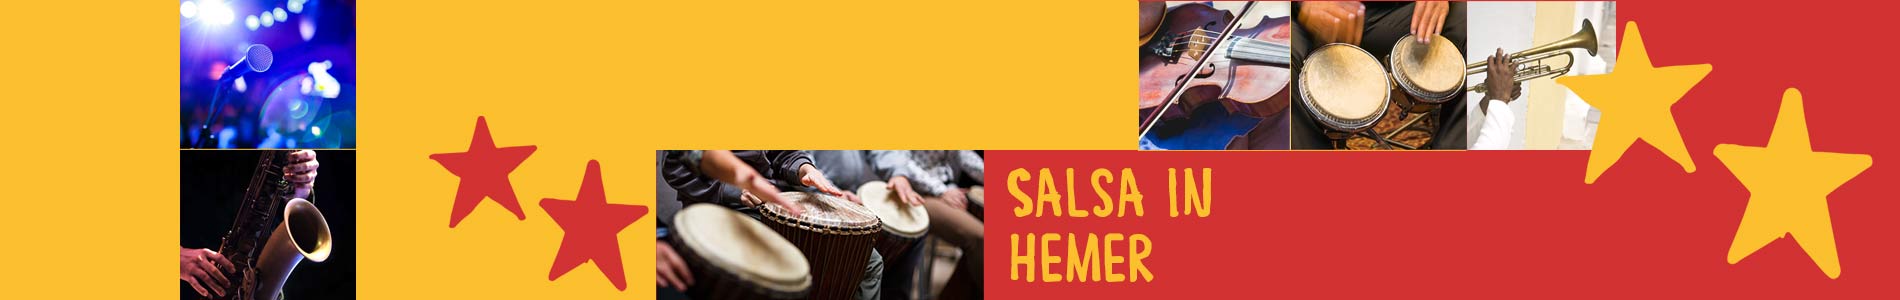 Salsa in Hemer – Salsa lernen und tanzen, Tanzkurse, Partys, Veranstaltungen